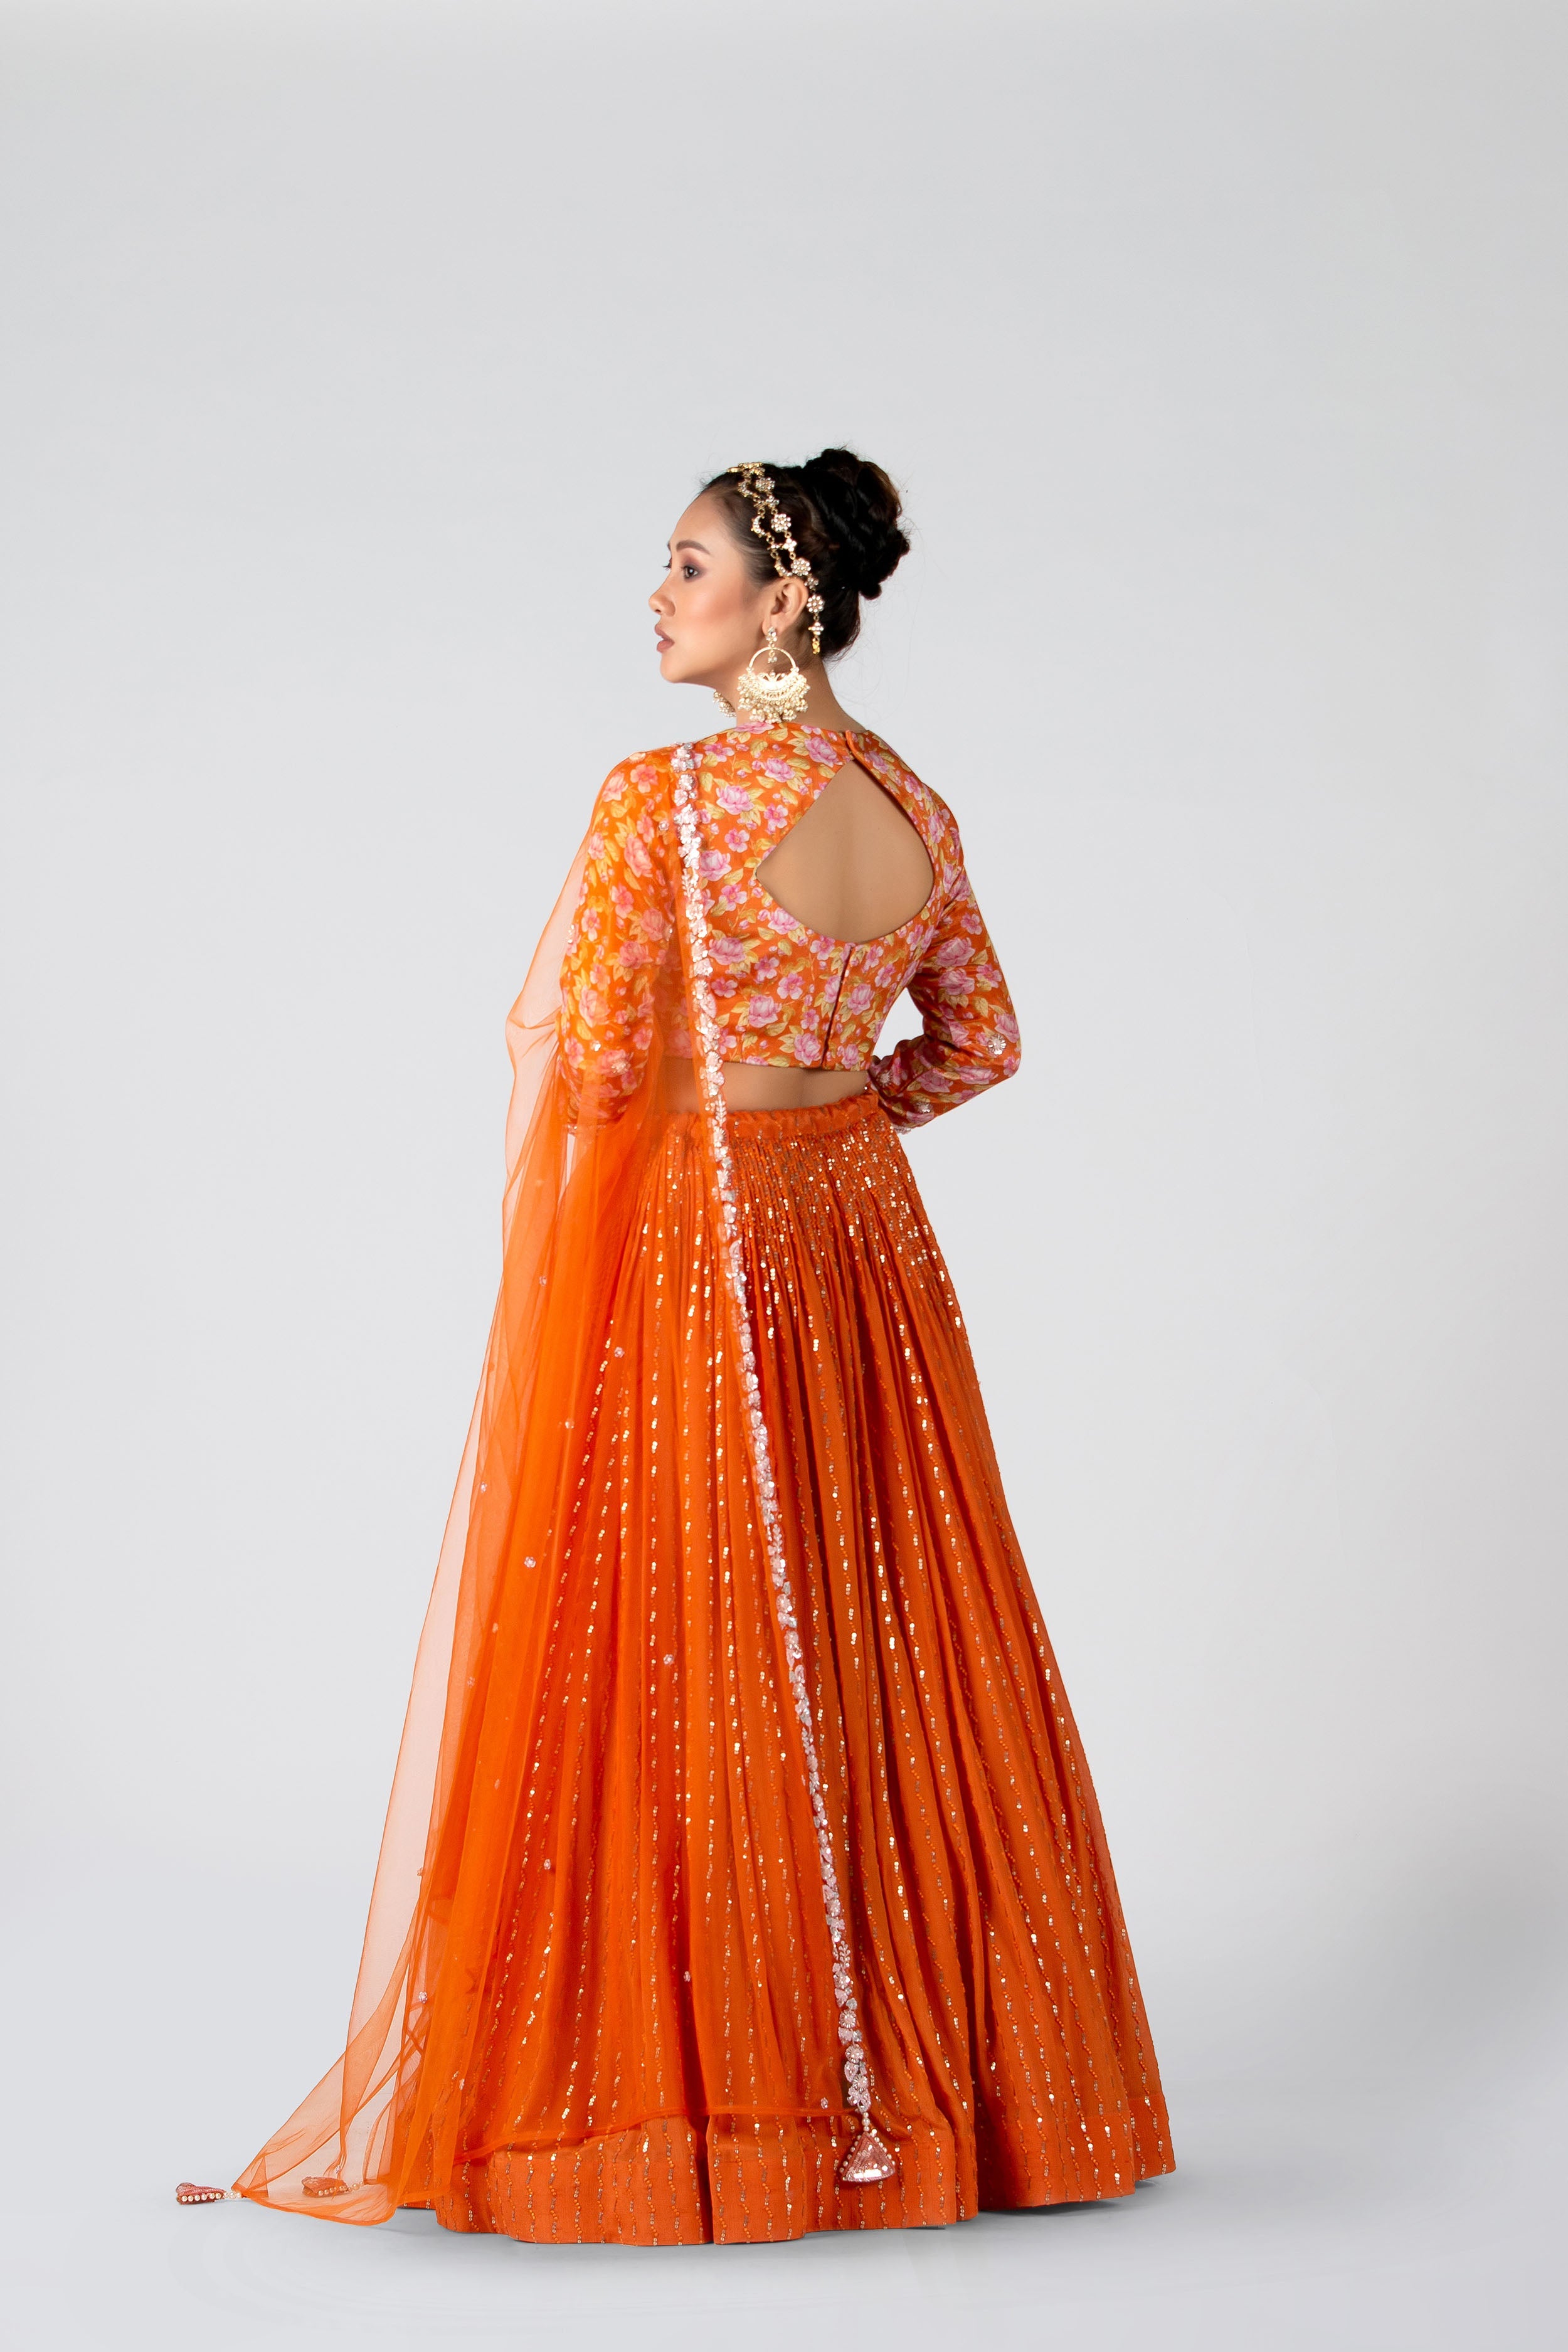 Suruchi Parakh - Blaze Orange Pleated Skirt Set